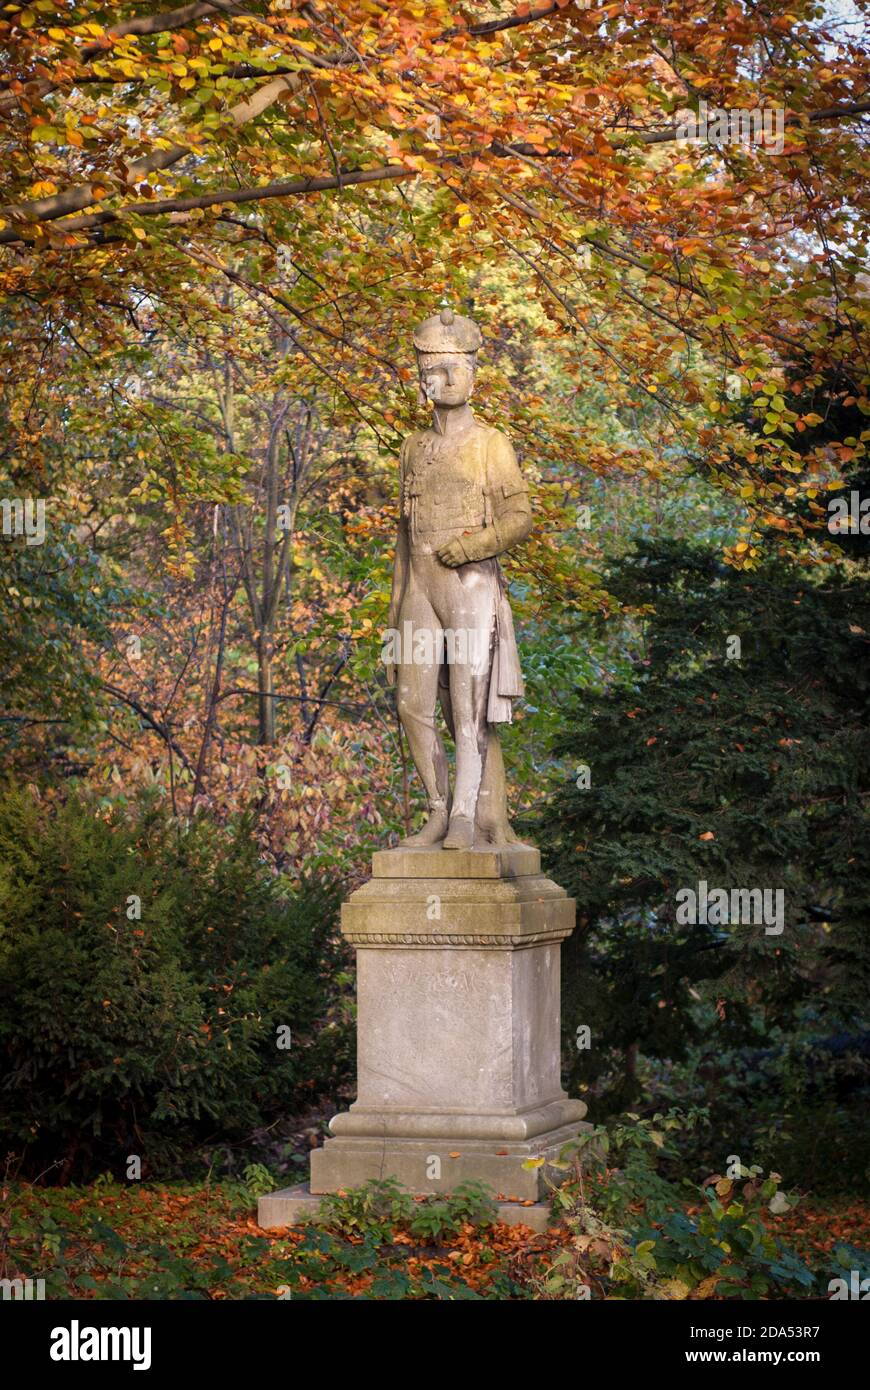 Prinz Wilhelm und die Farben des Herbst - principe Guglielmo e i colori dell'autunno Foto Stock